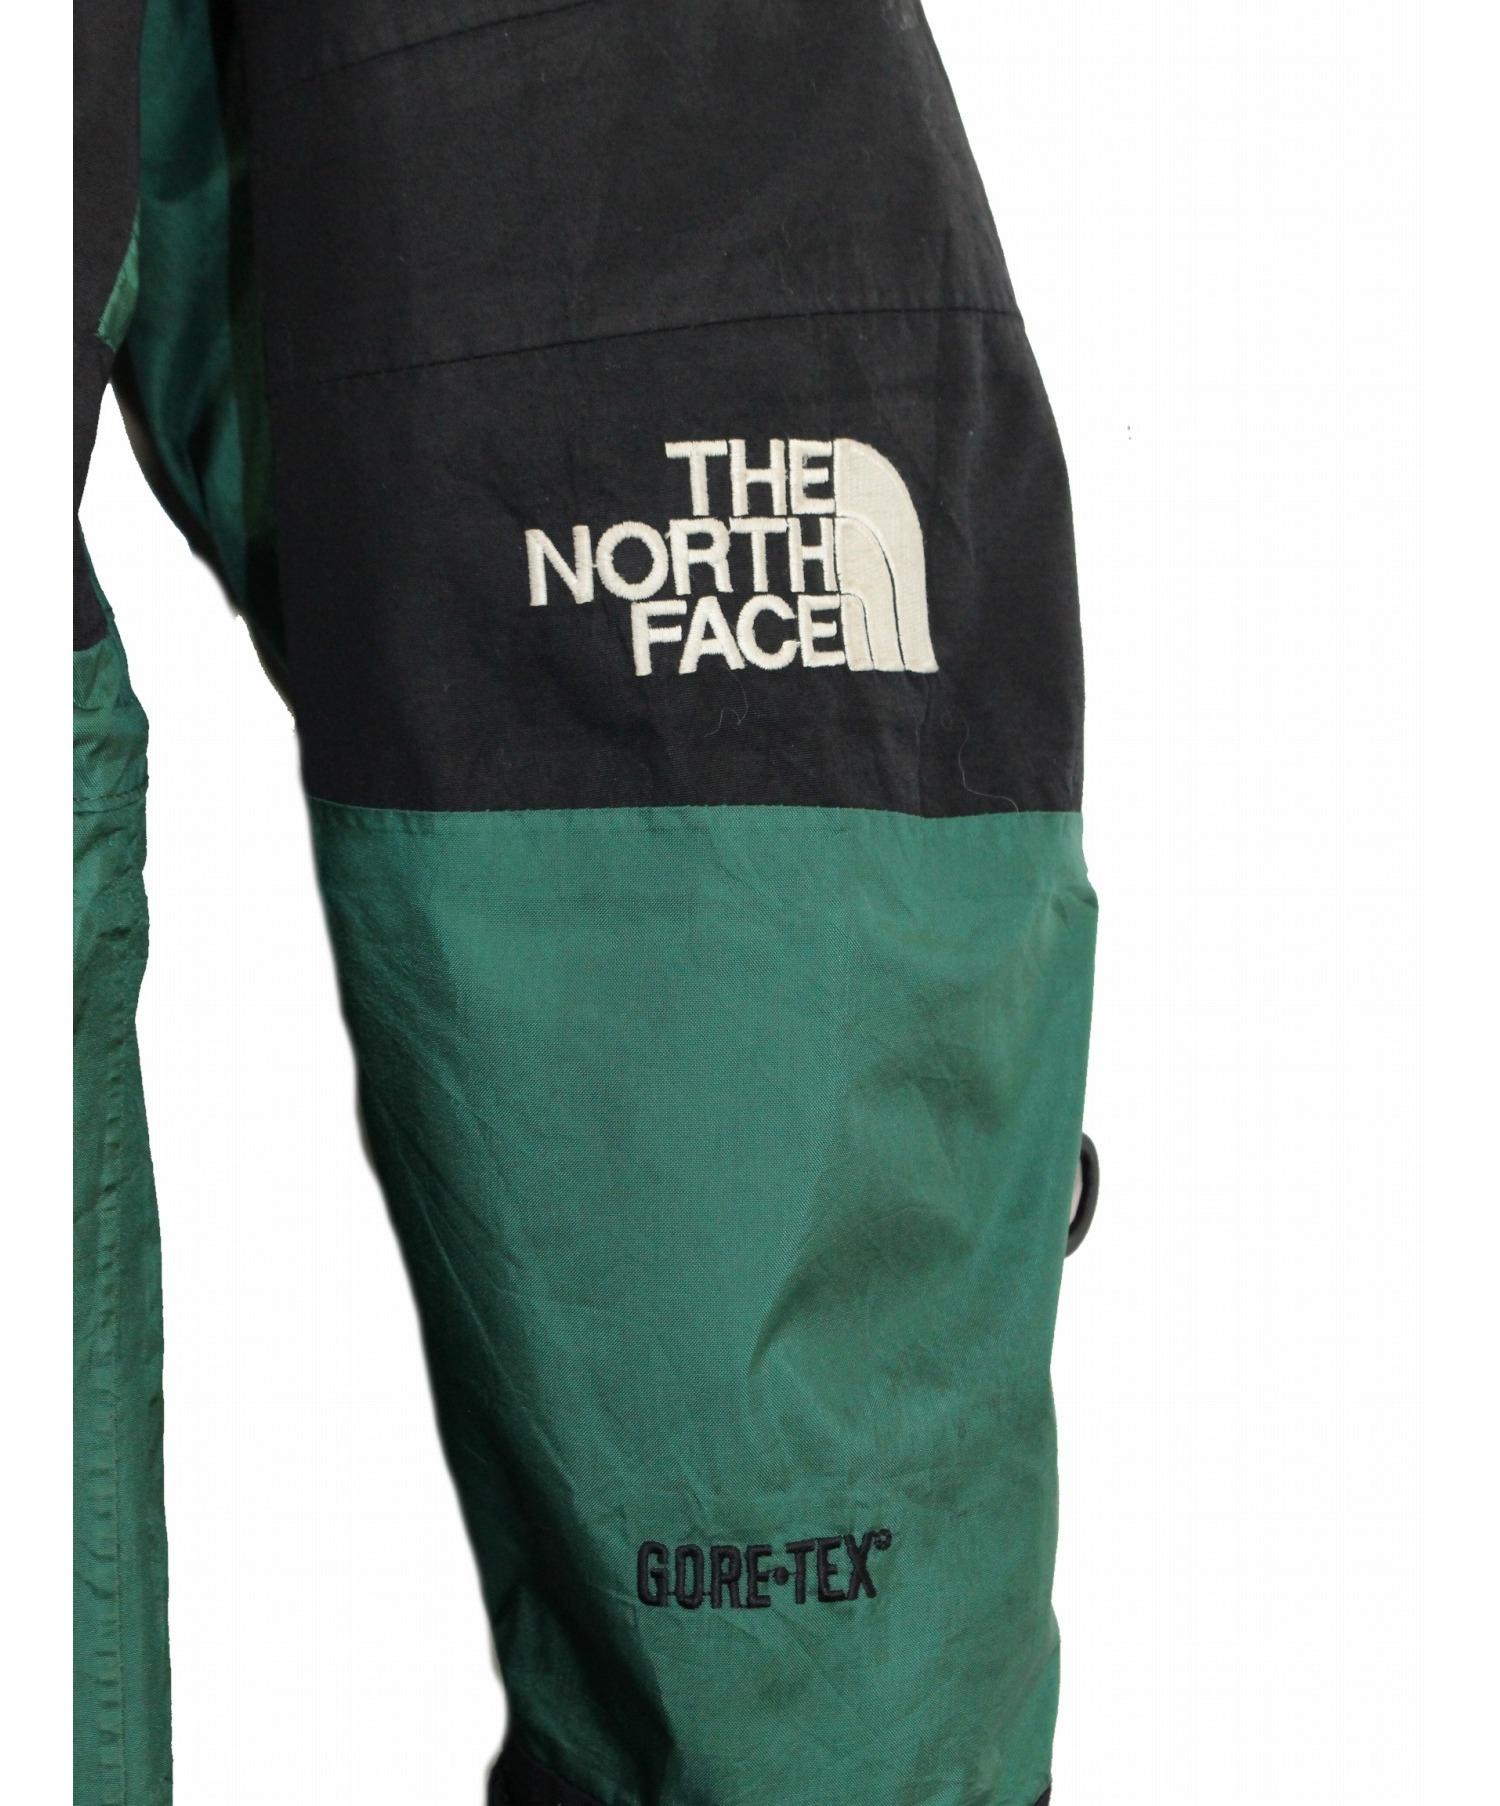 THE NORTH FACE (ザノースフェイス) 90s GORE-TEX マウンテンジャケット サイズ:L